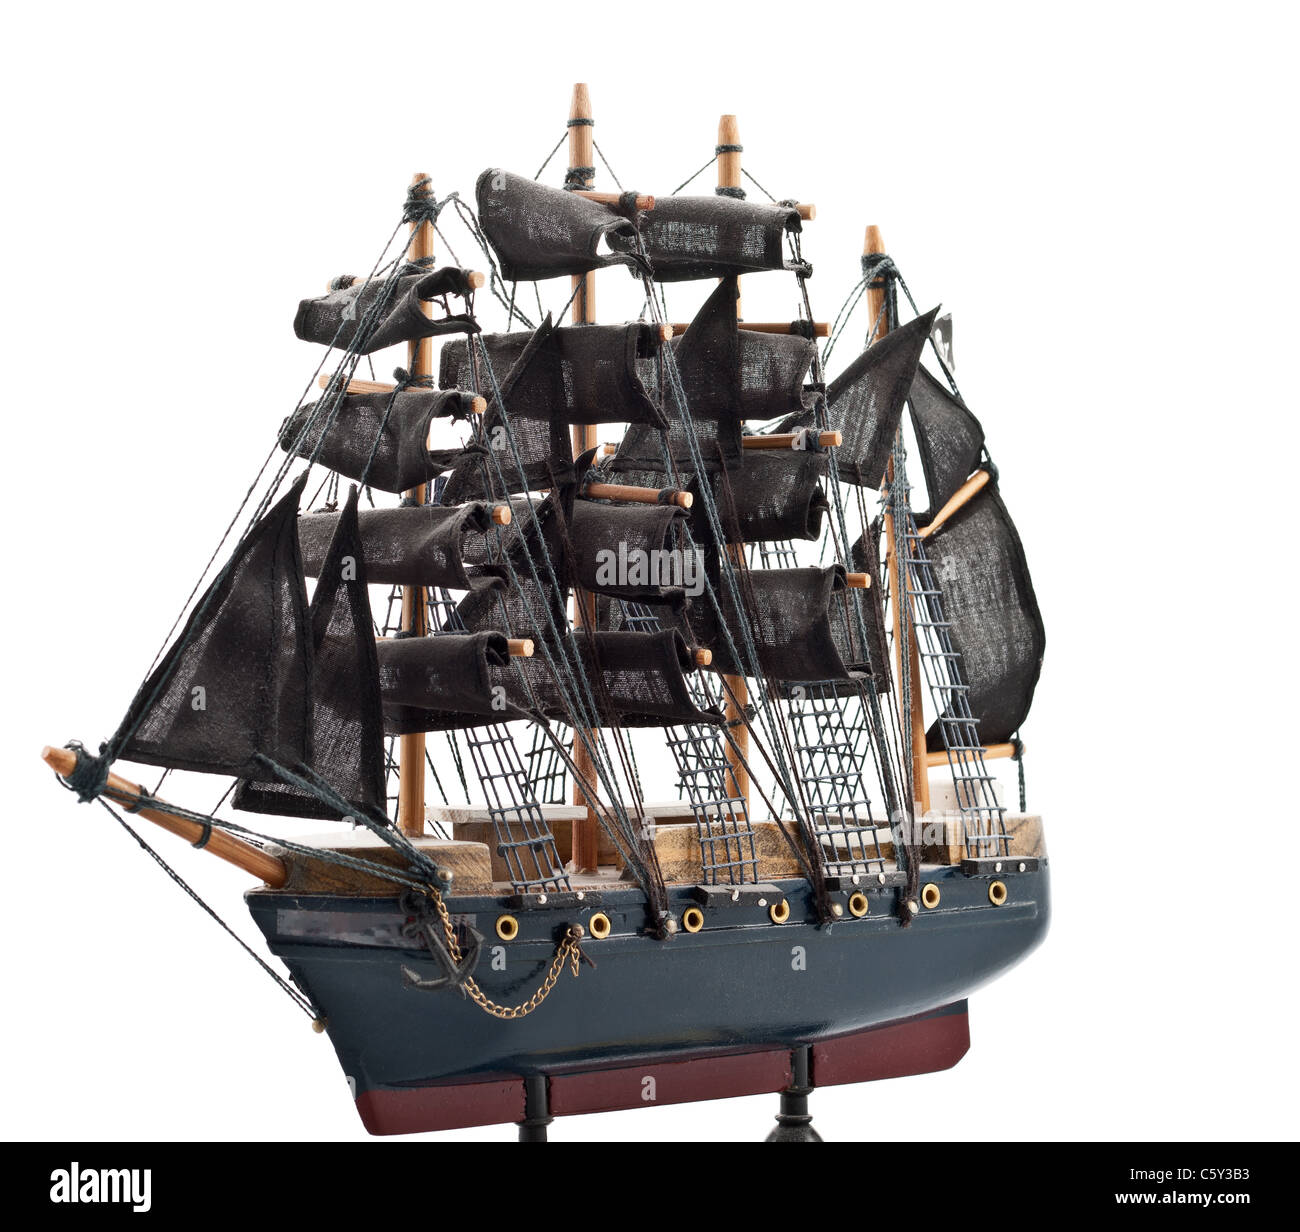 Aislado en blanco barco pirata modelo de madera Foto de stock